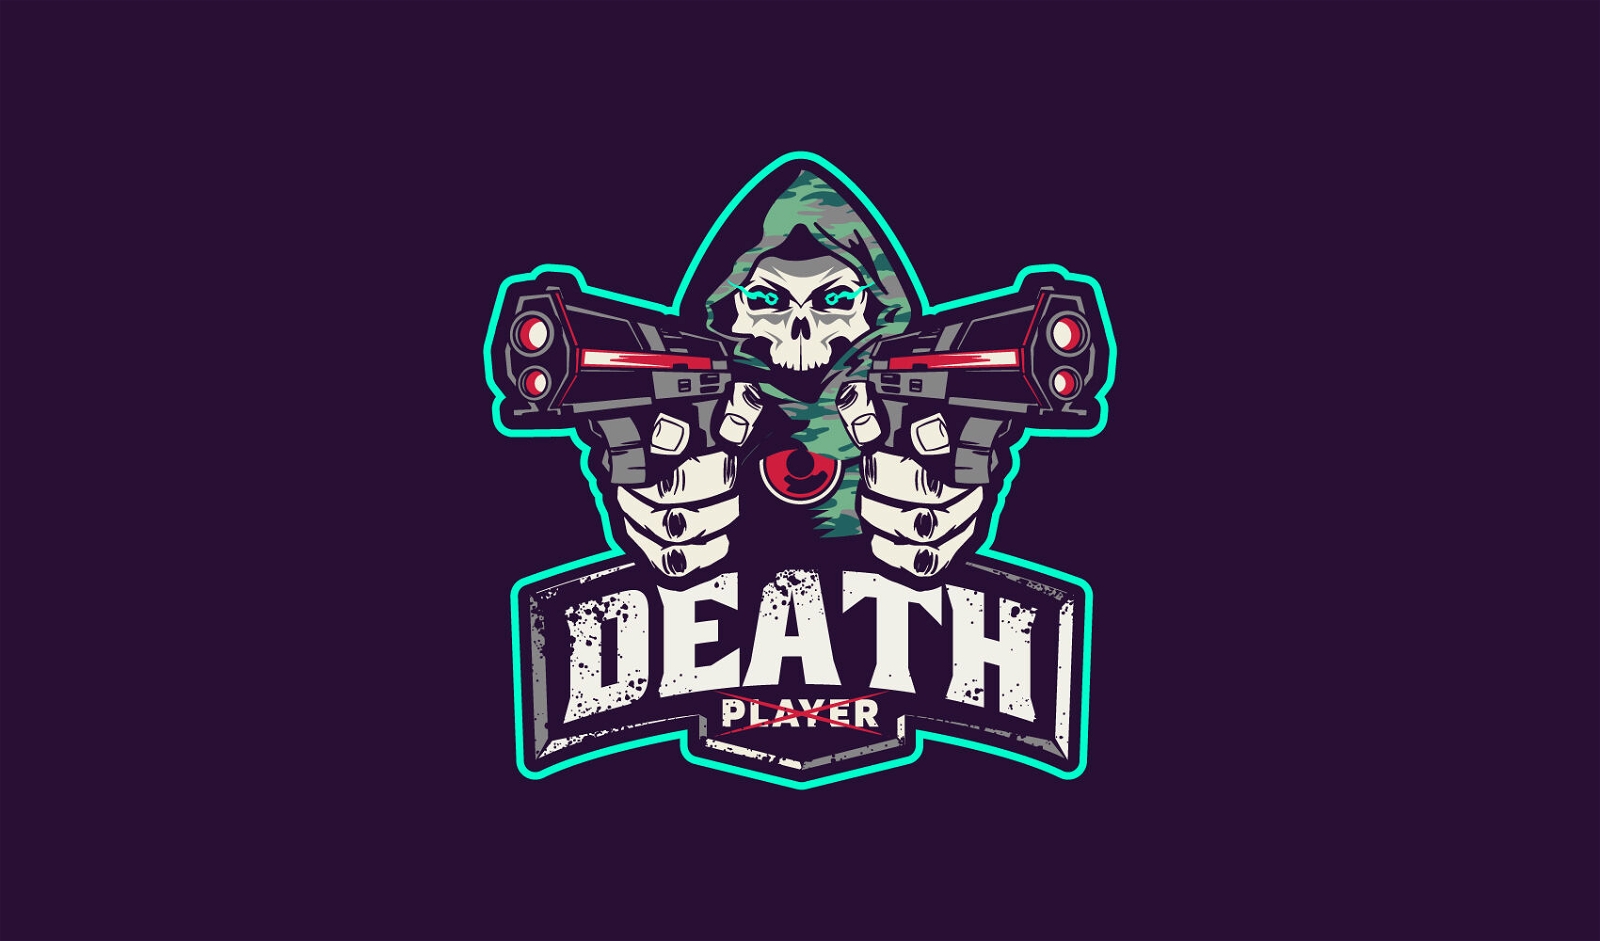 Dise?o del logo del jugador de la muerte